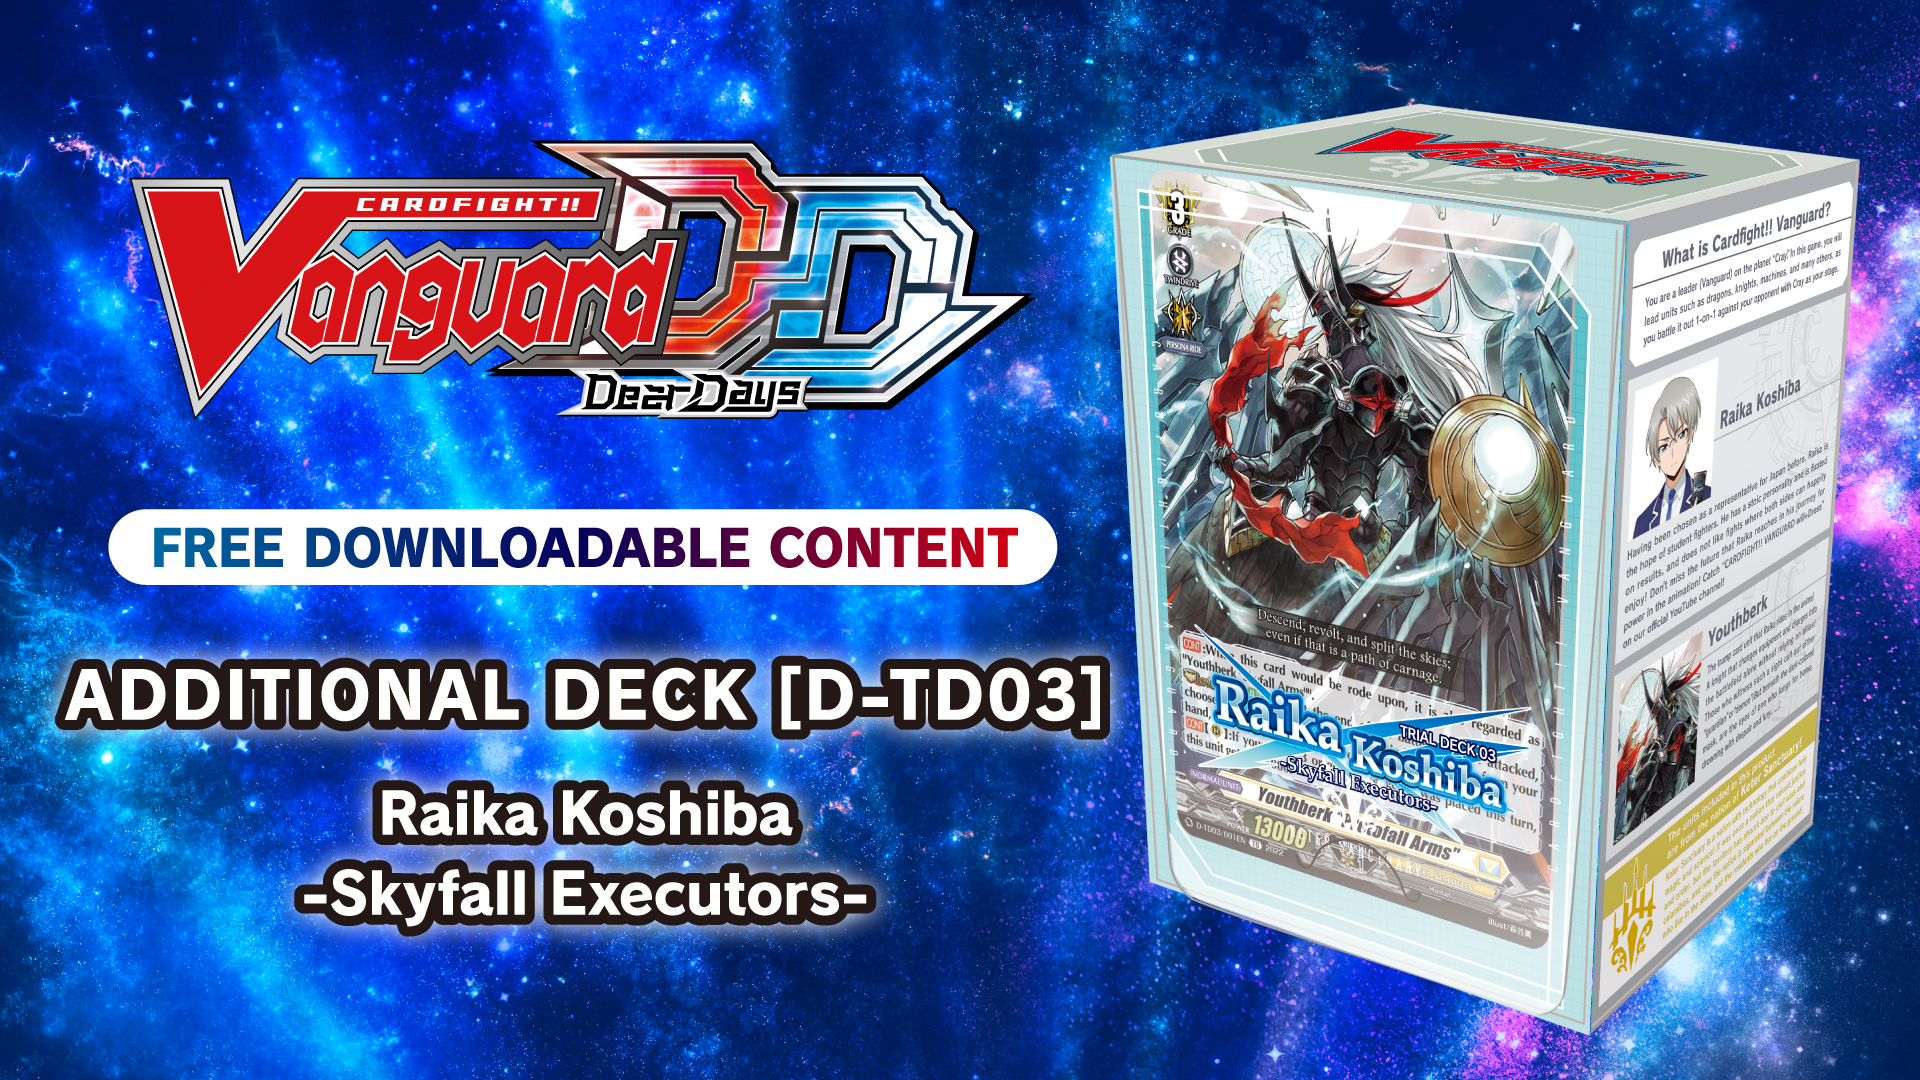 Additional Deck [D-TD03]: Raika Koshiba -Skyfall Executors-